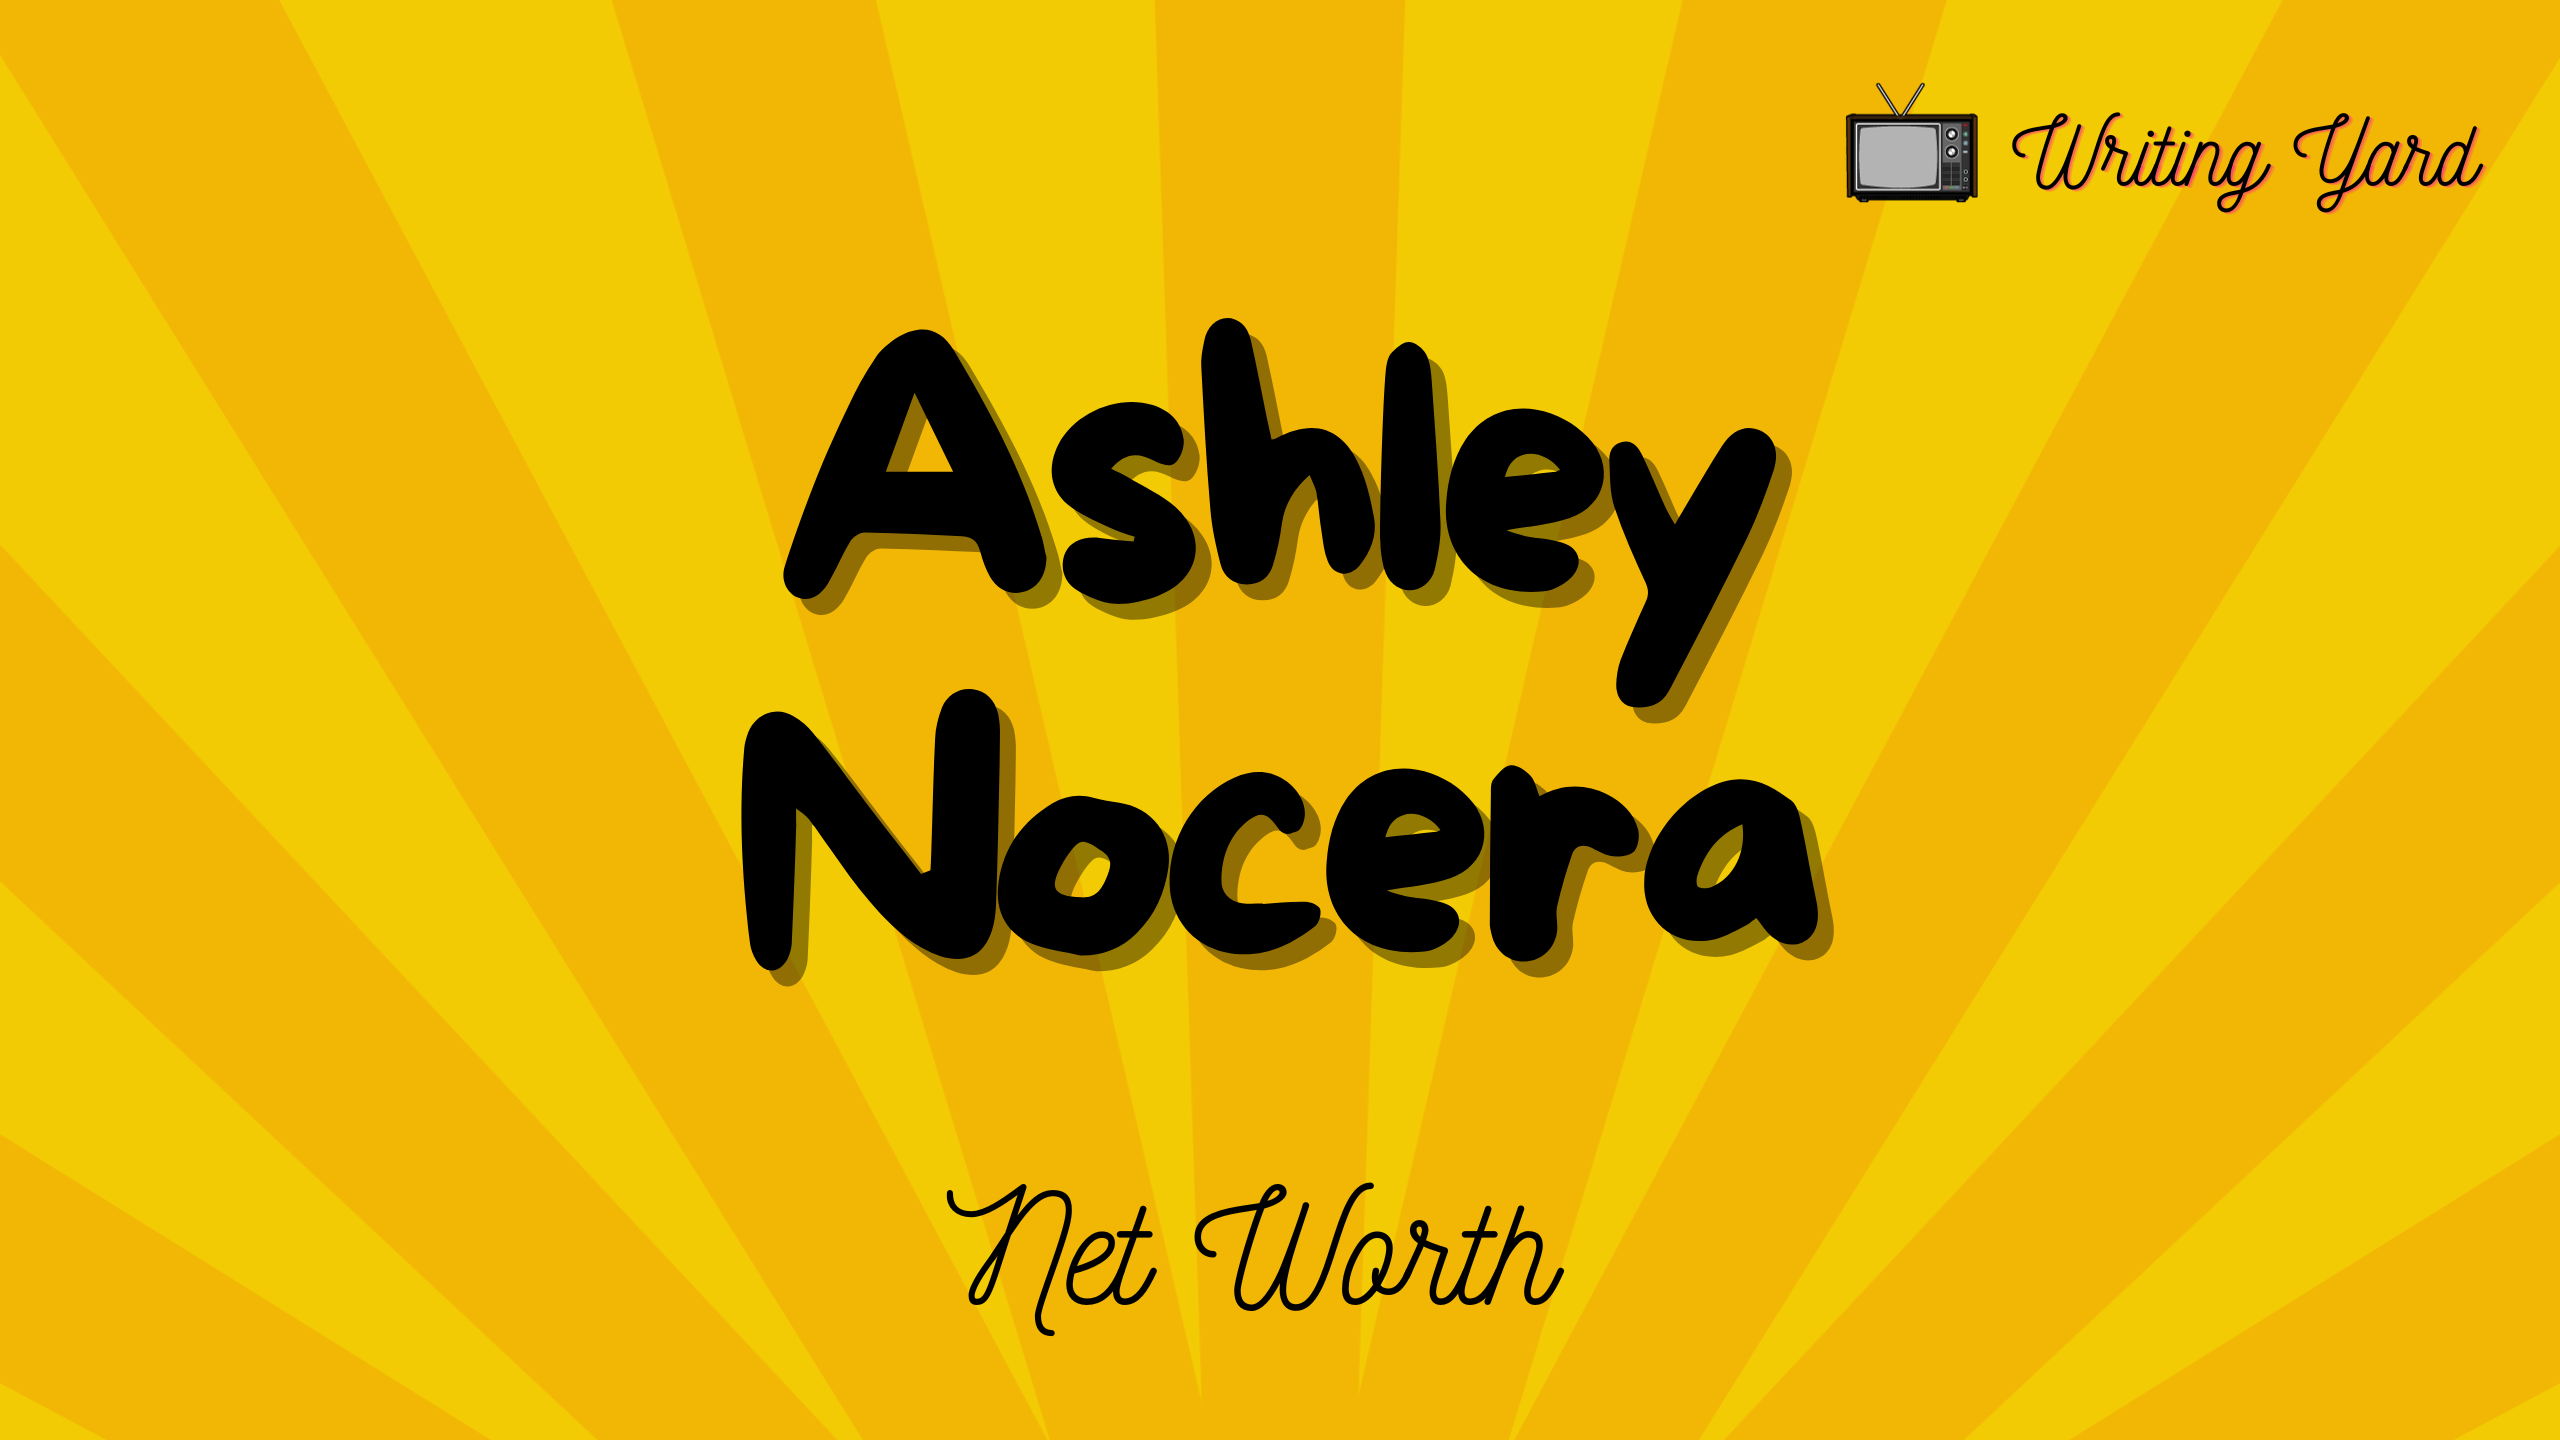 Ashley Nocera Net Worth